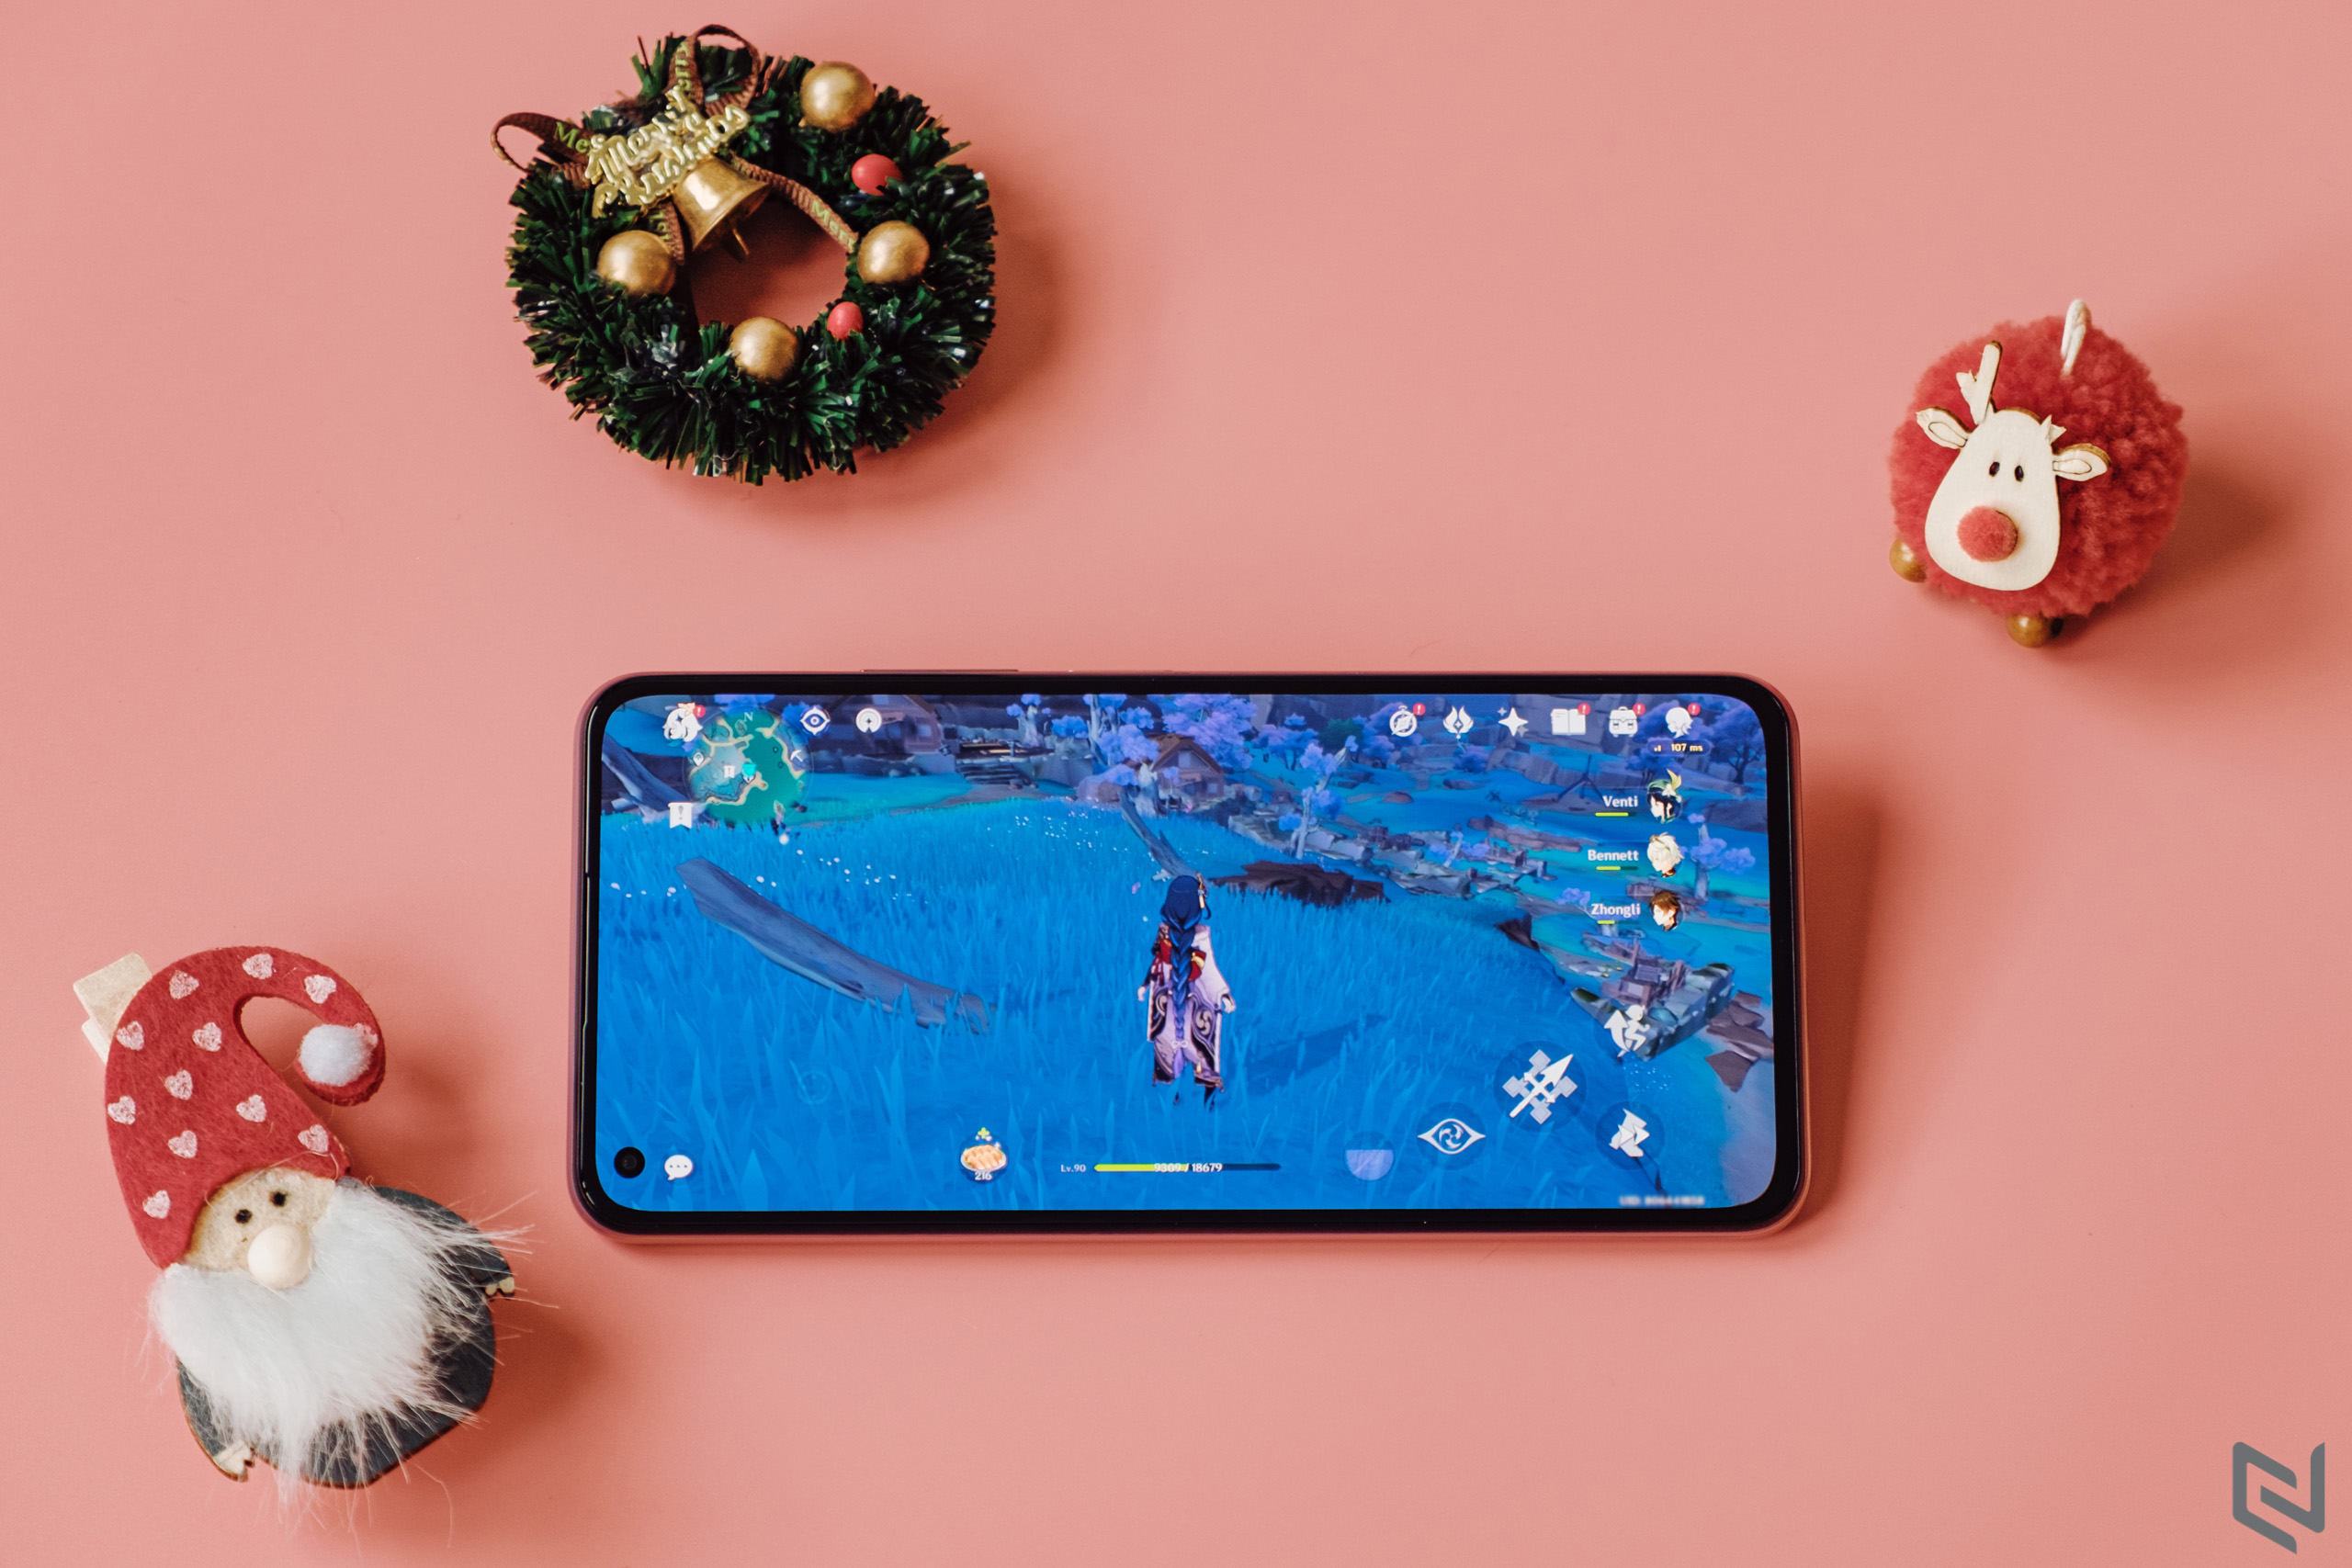 Không chỉ mỏng nhẹ bậc nhất phân khúc, Xiaomi 11 Lite 5G NE còn là smartphone giải trí đáng gờm theo bạn trong mọi cuộc vui